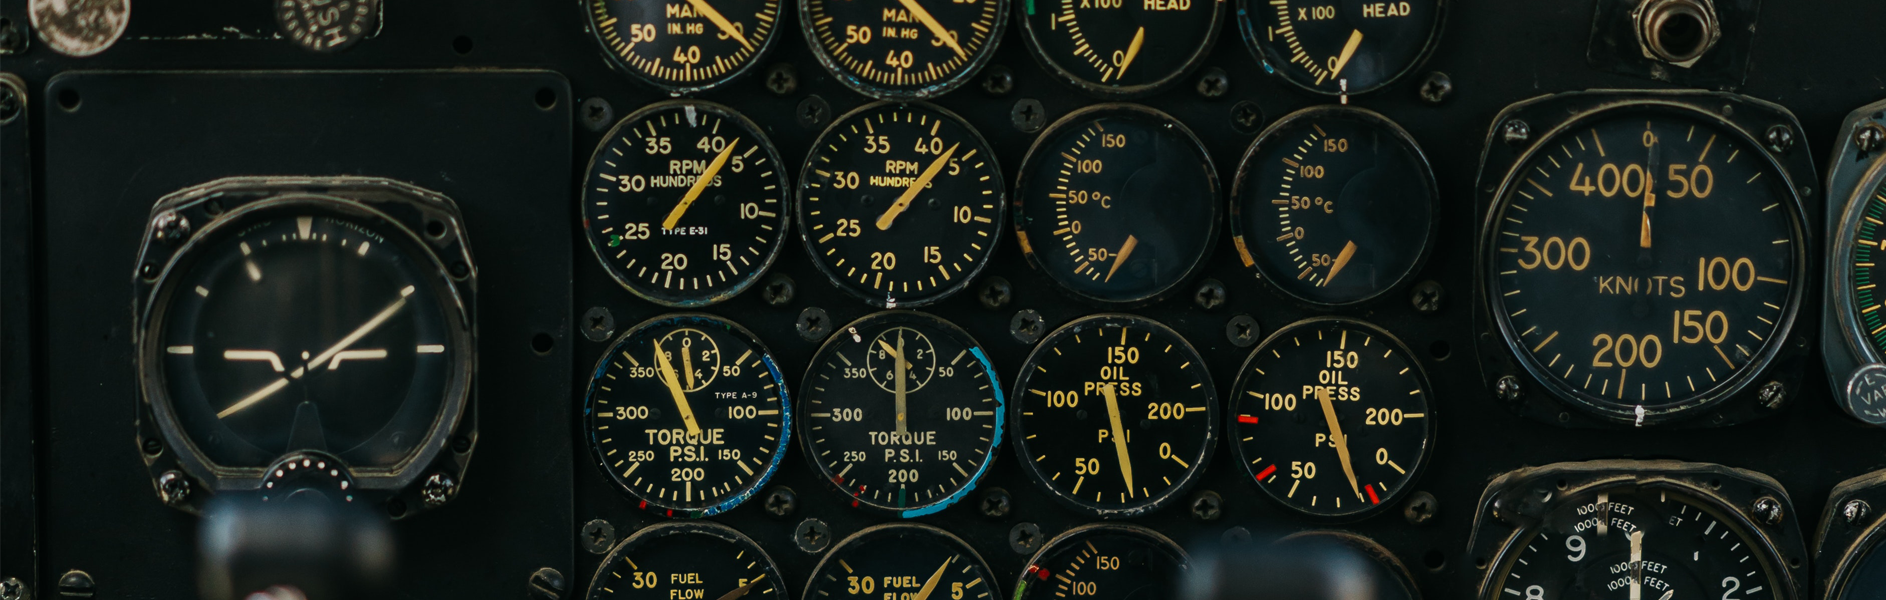 aeroplane cockpit showing gauges